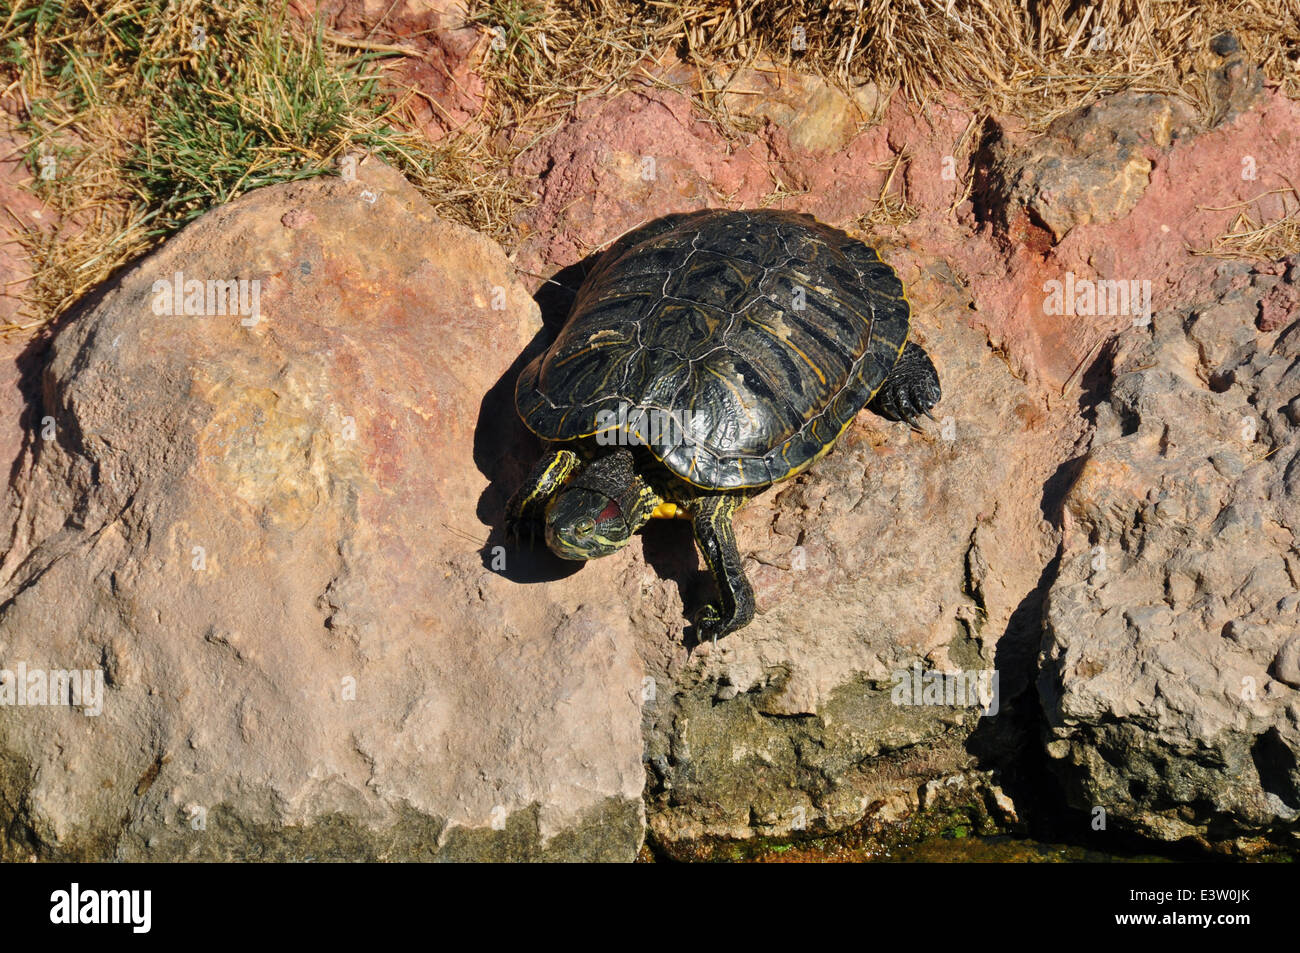 Rot eared Slider Schildkröte Klettern auf Felsen. Amphibien Reptilien Tiere in natürlicher Umgebung. Stockfoto